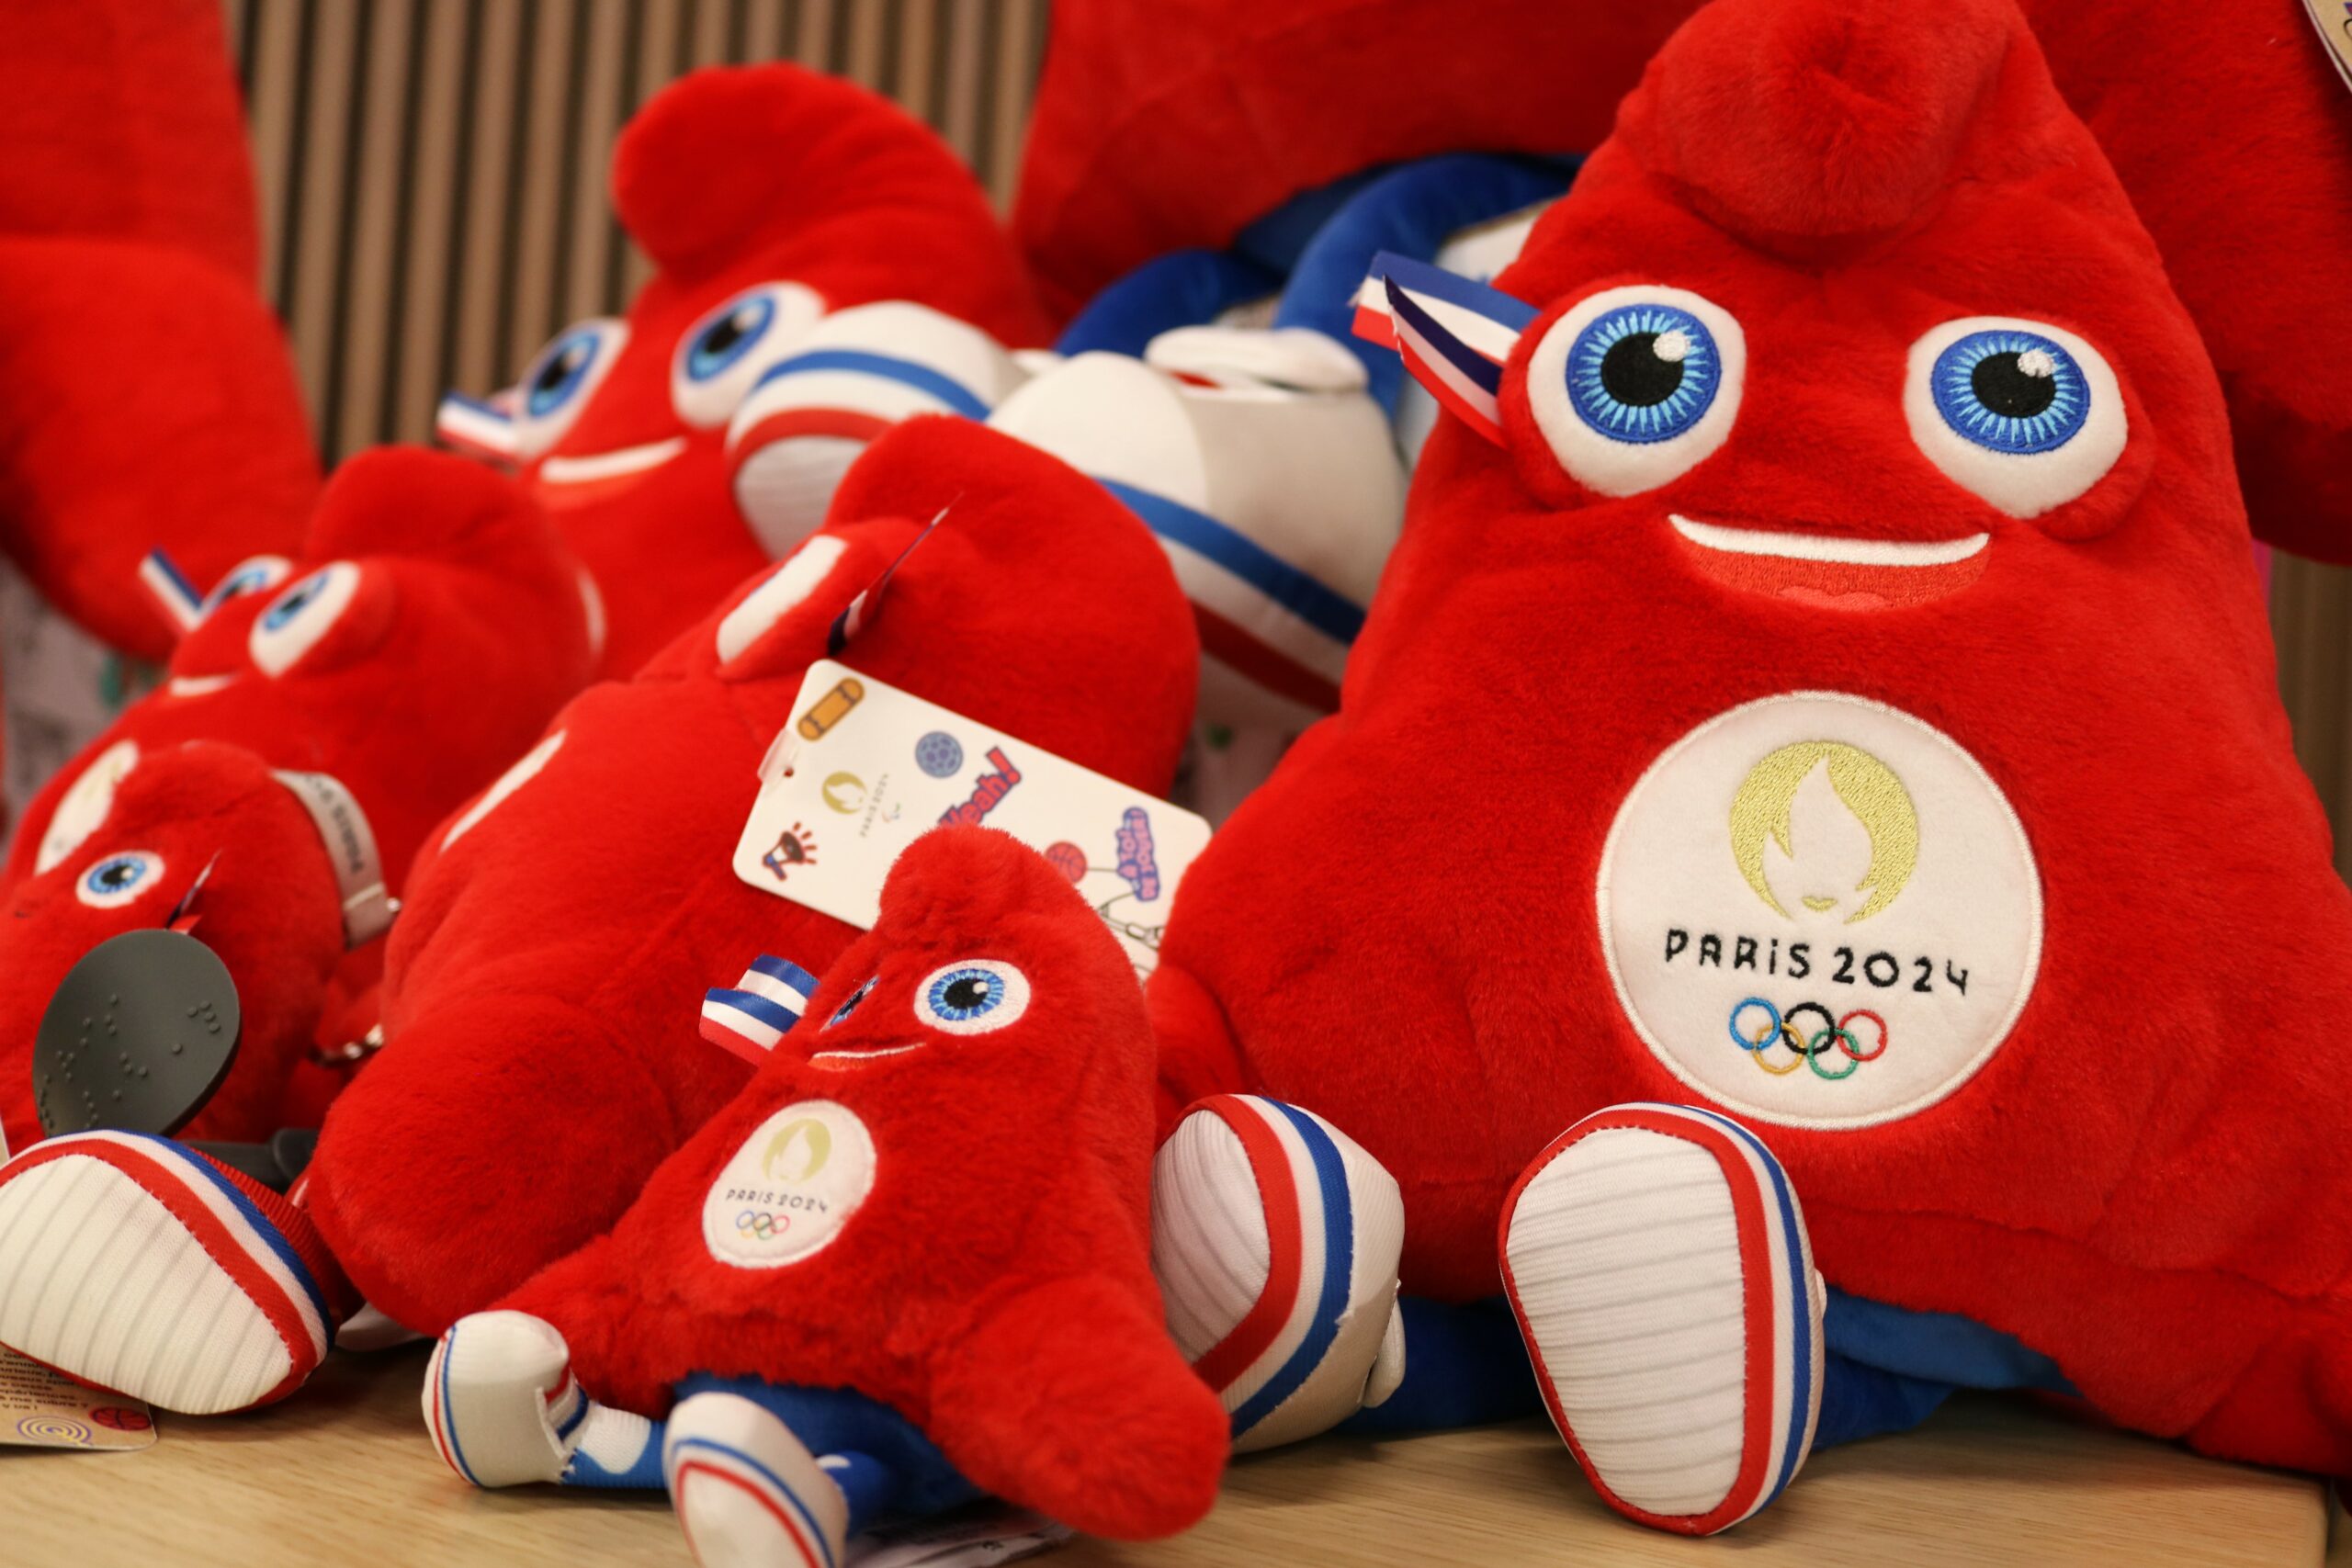 Voici les Phryges : la mascotte officielle des JO de Paris 2024